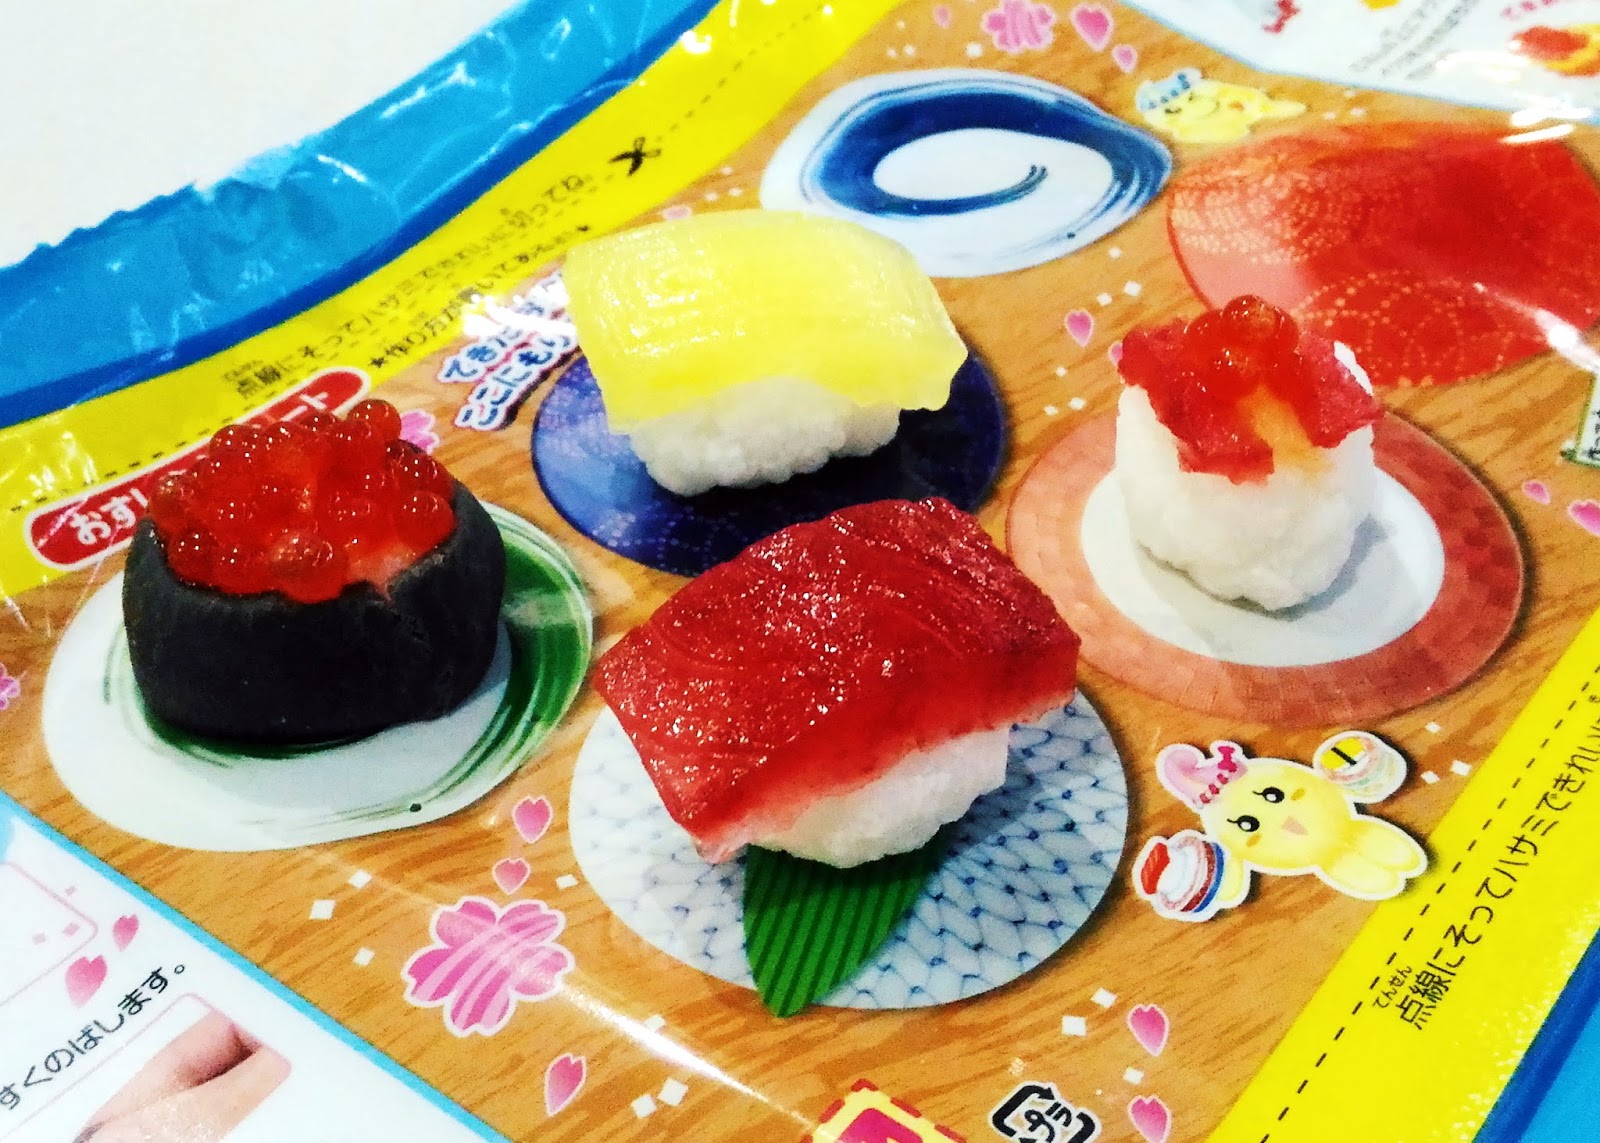 Sushi Candy - Japanese Kit Kat and Japanese candy box – SUSHI CANDY